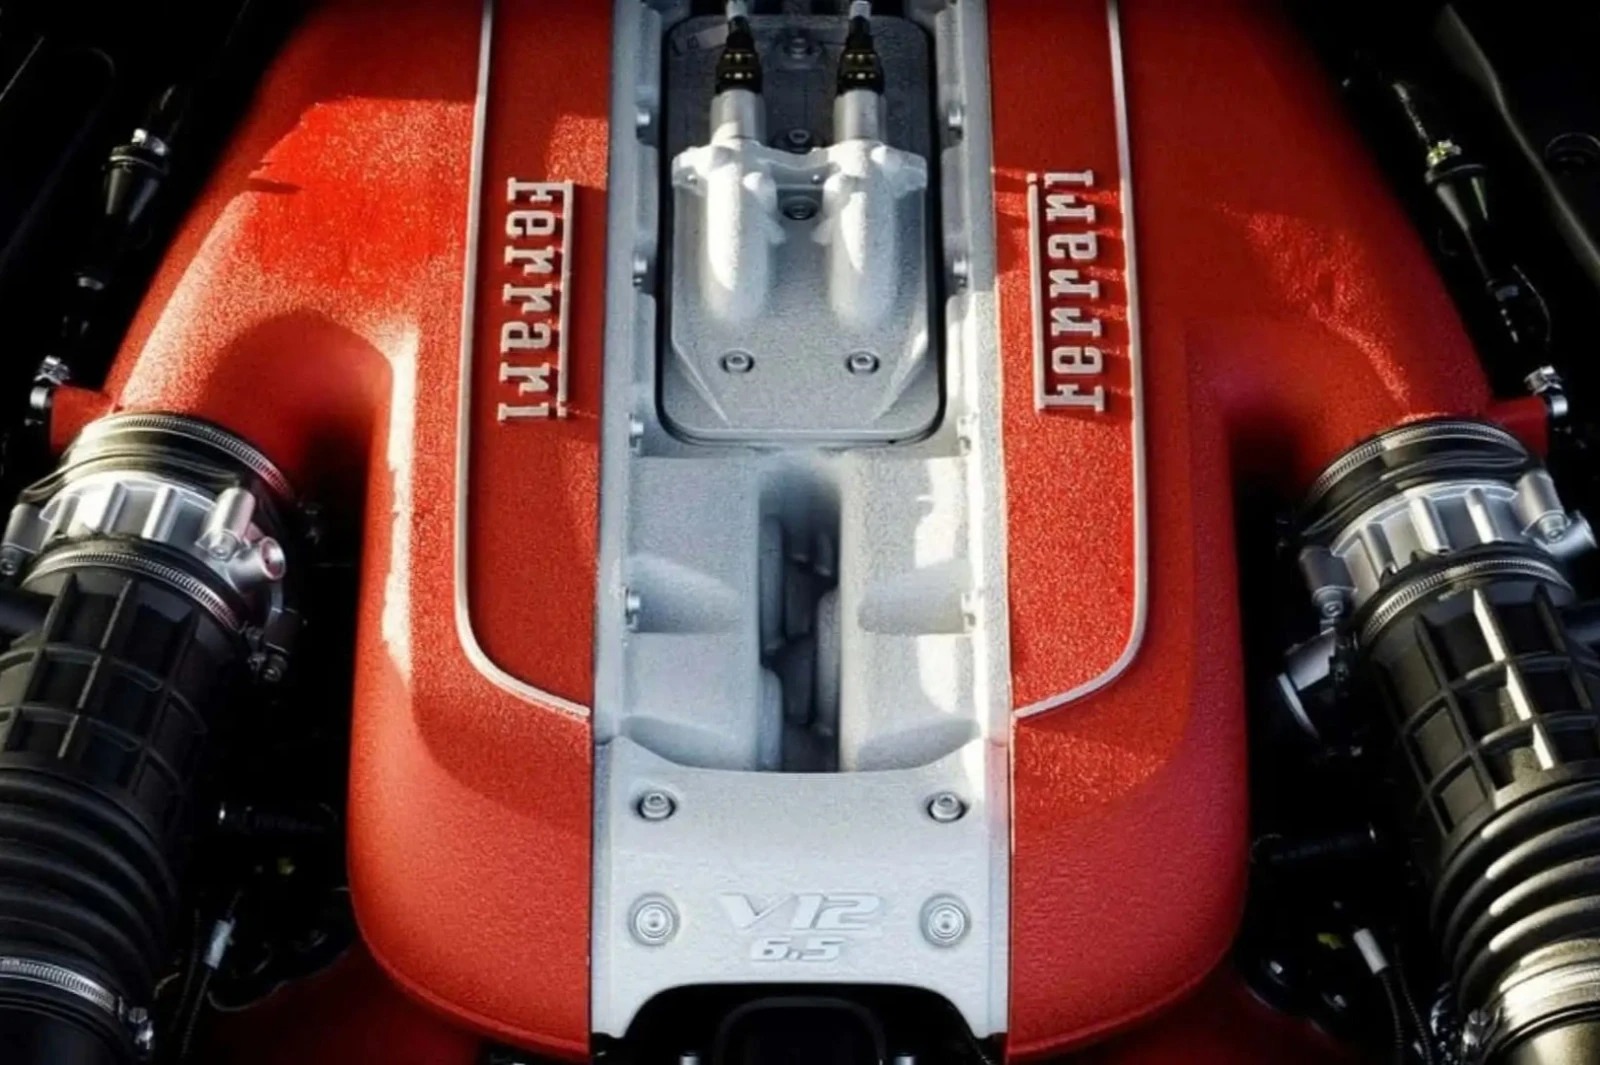 Ferrari V12